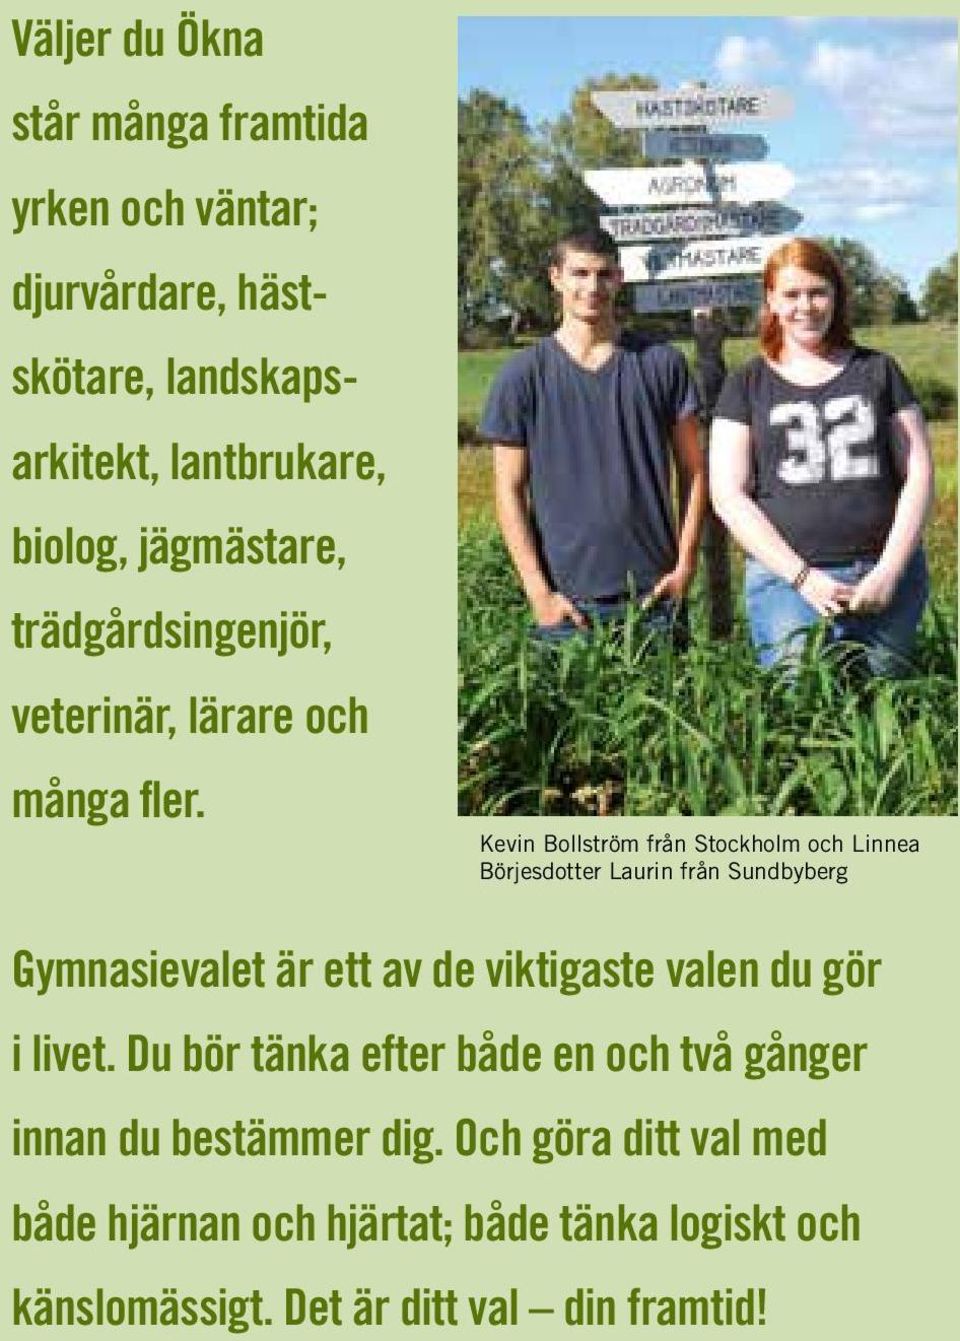 Kevin Bollström från Stockholm och Linnea Börjesdotter Laurin från Sundbyberg Gymnasievalet är ett av de viktigaste valen du